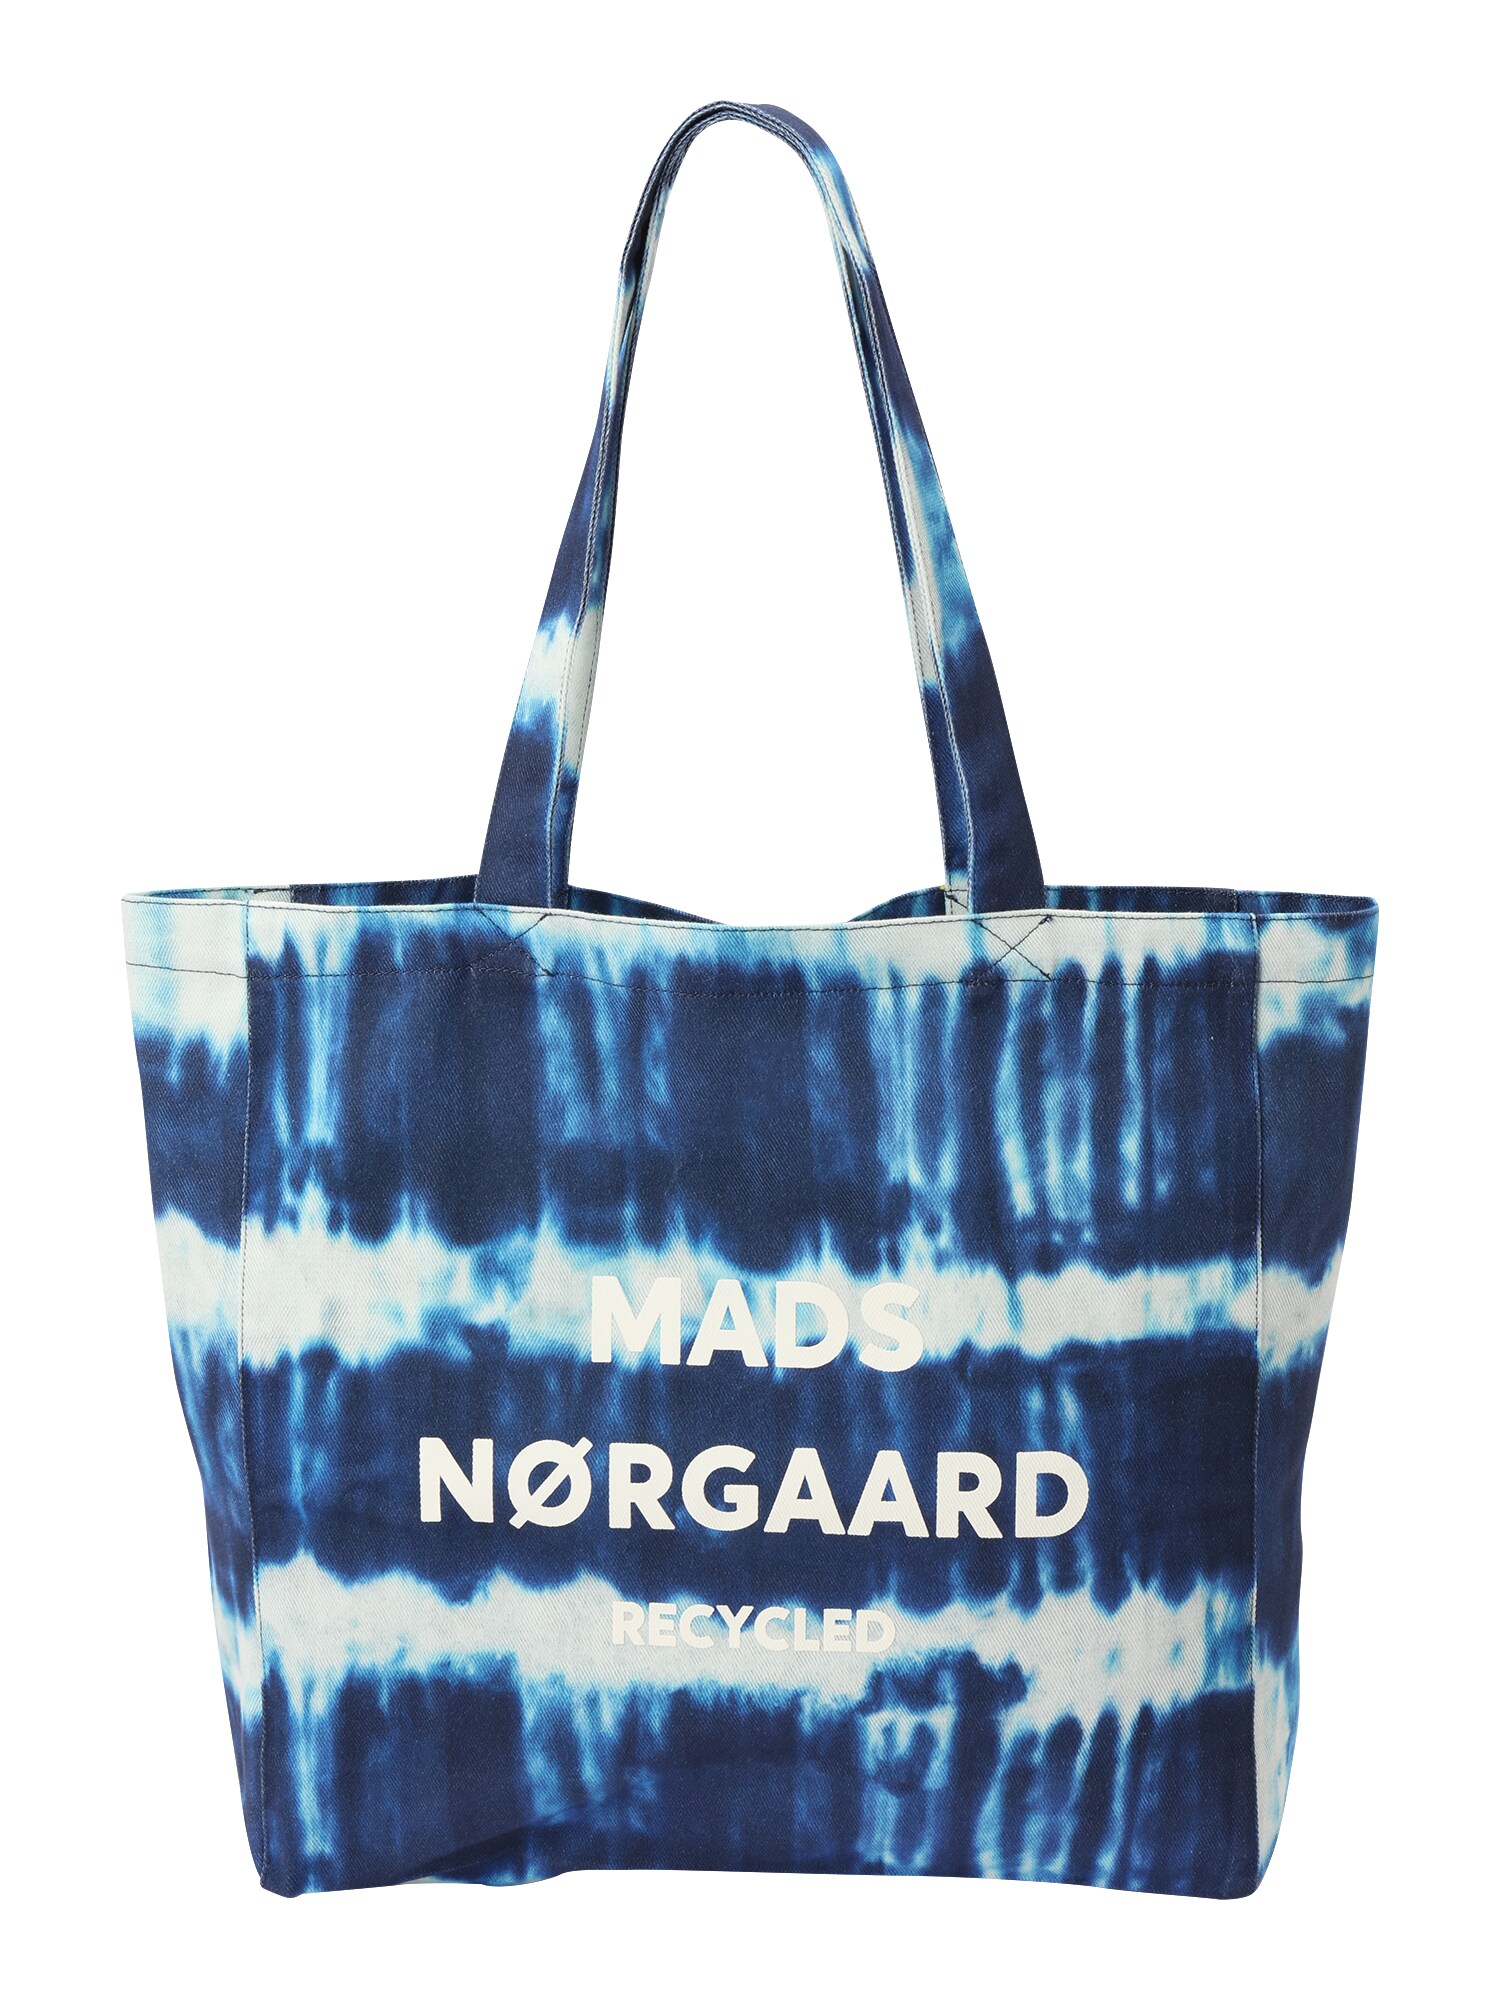 MADS NORGAARD COPENHAGEN Shopper táska  azúr / sötétkék / fehér